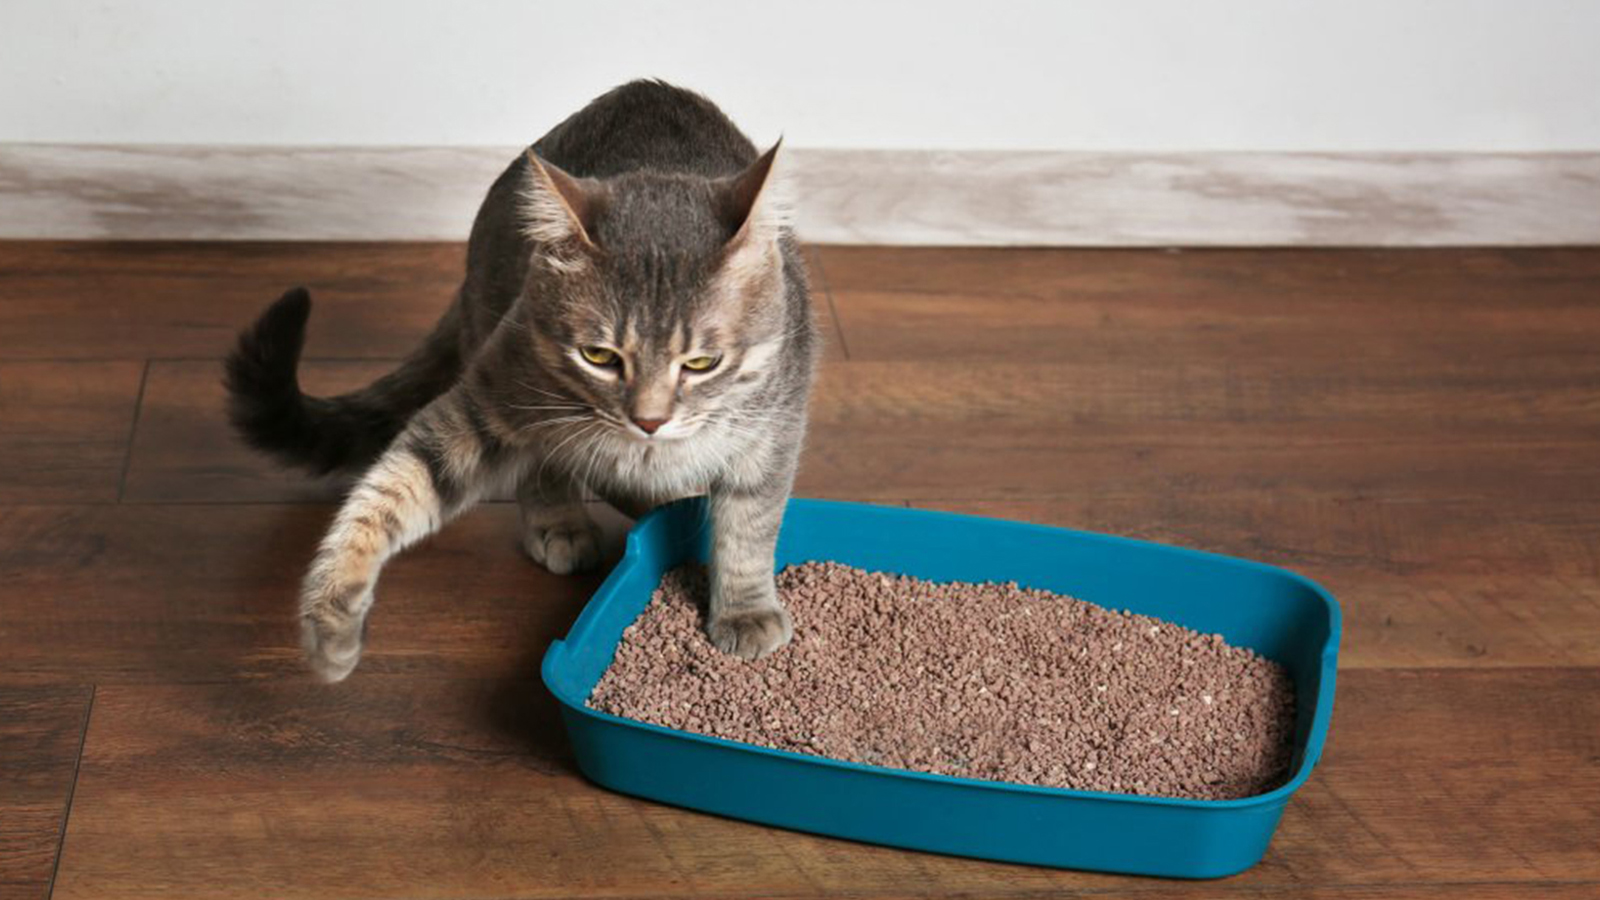 Erros comuns para evitar com a caixa de areia dos gatos - Folha